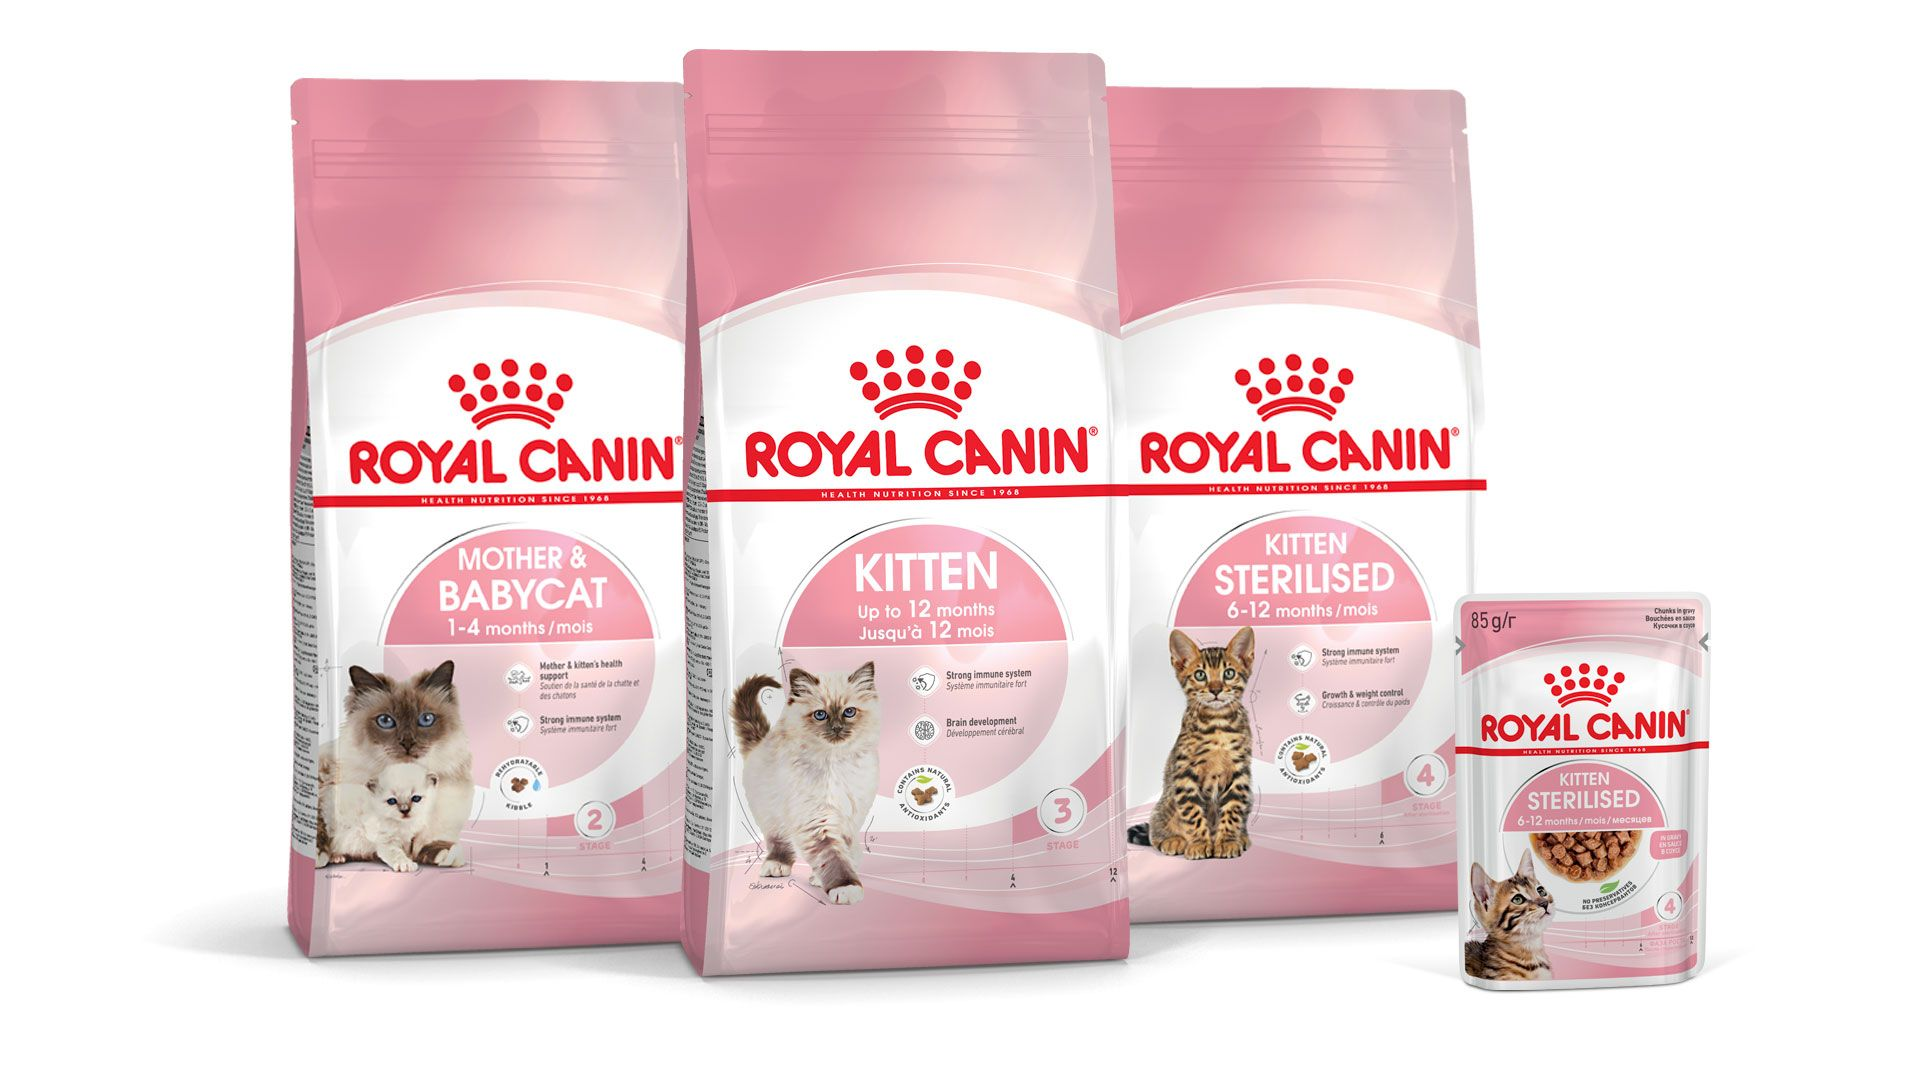 Royal Canin Yavru Kedi Gelişim Programı ürün yelpazesi